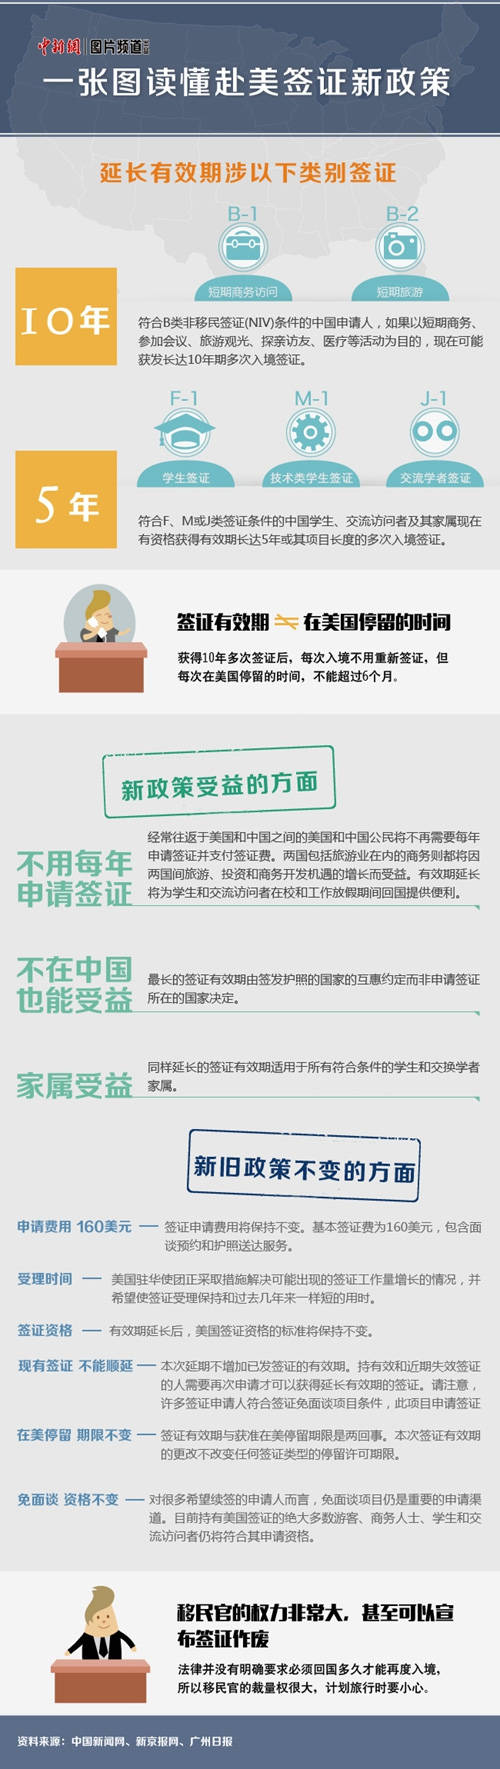 中国公民赴美10年签证申请攻略|1对1领域专业资讯分享平台